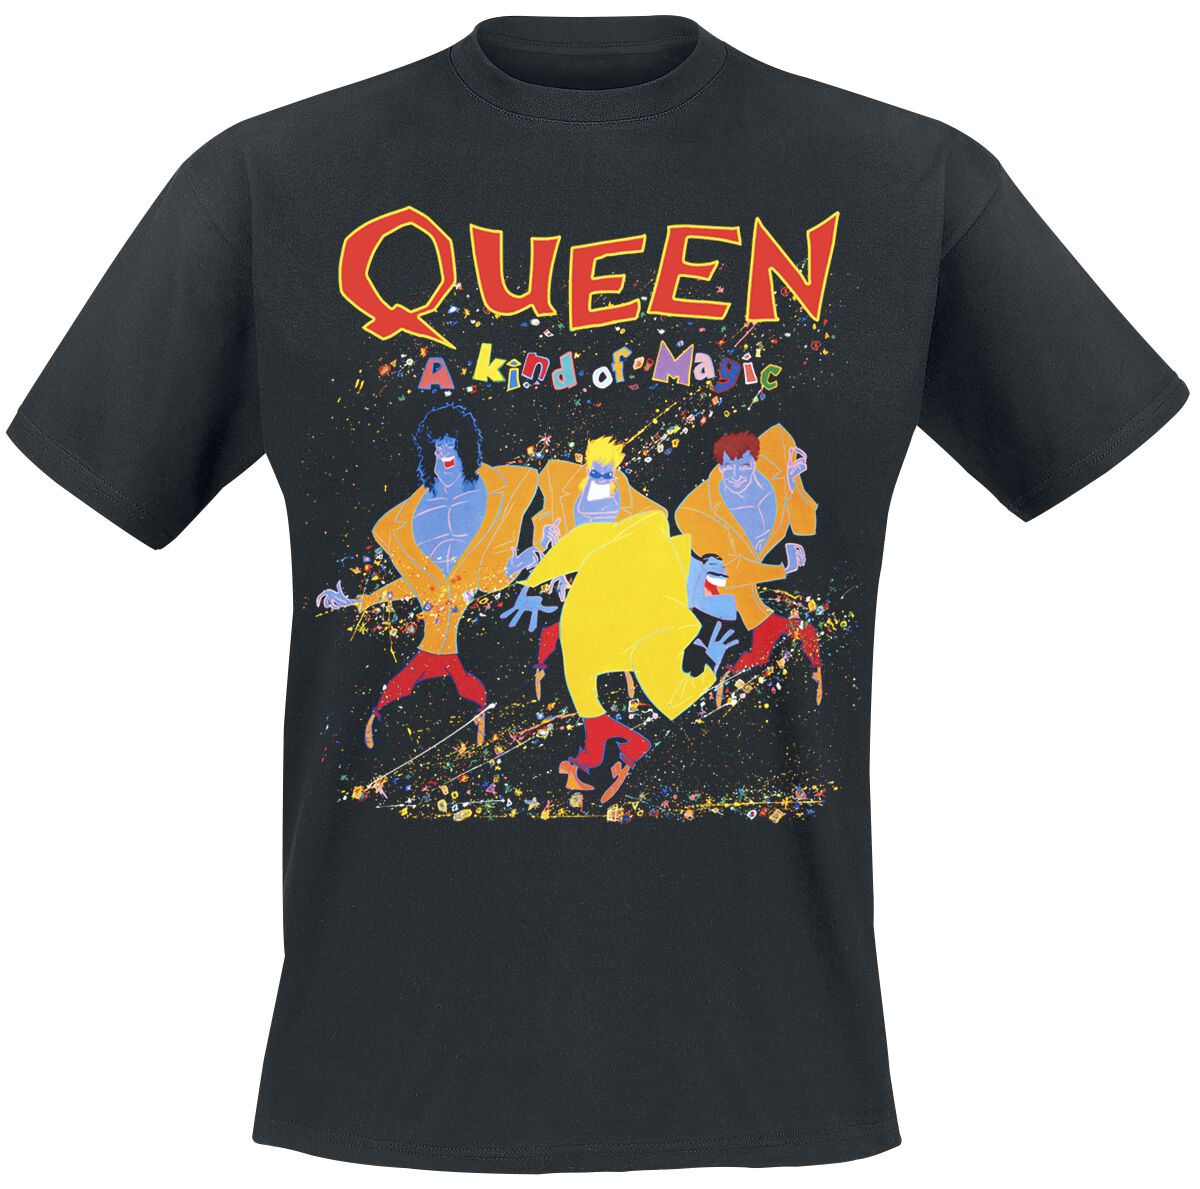 Queen T-Shirt - A Kind Of Magic - S bis 5XL - für Männer - Größe M - schwarz  - Lizenziertes Merchandise!